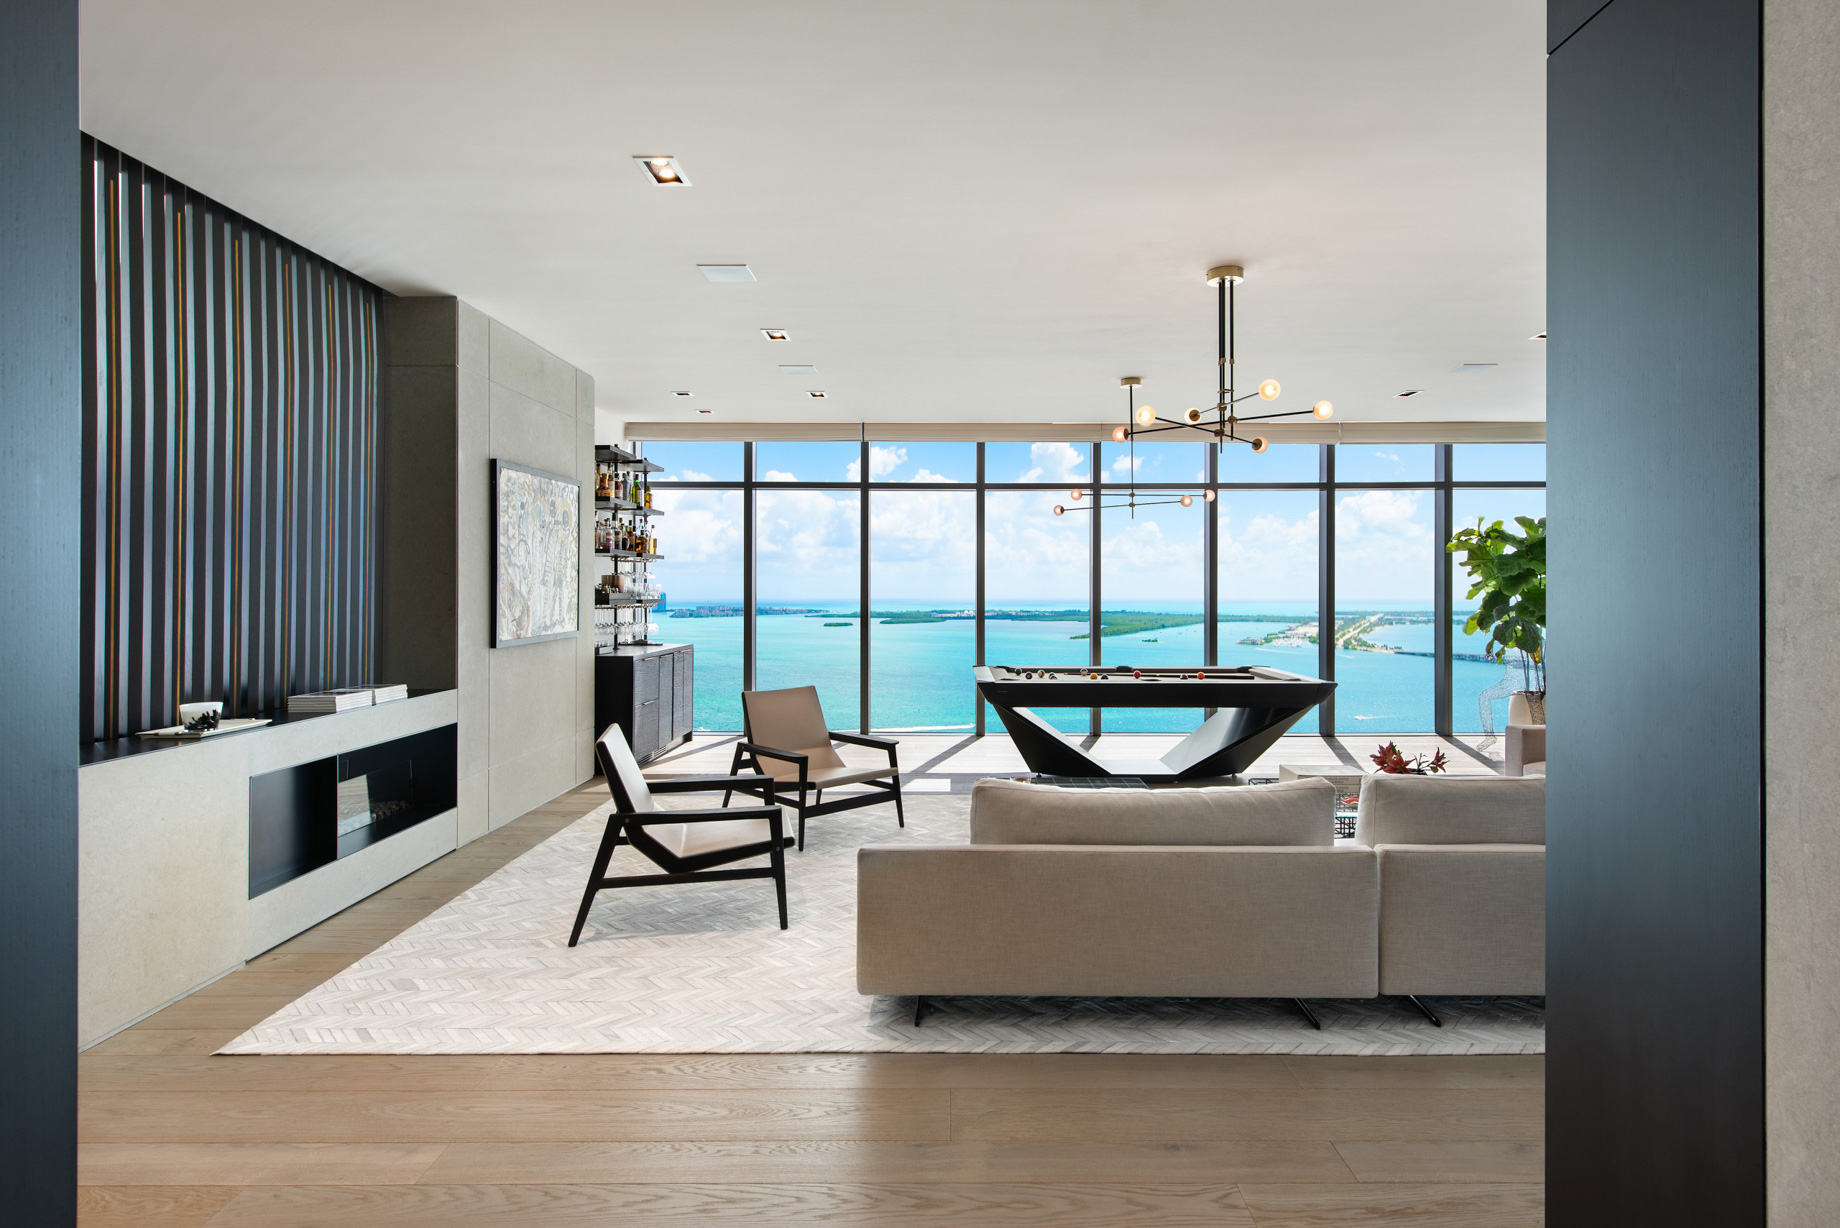 Echo Brickell Apartment Interior Design Miami, FL, USA – Blanca Wall